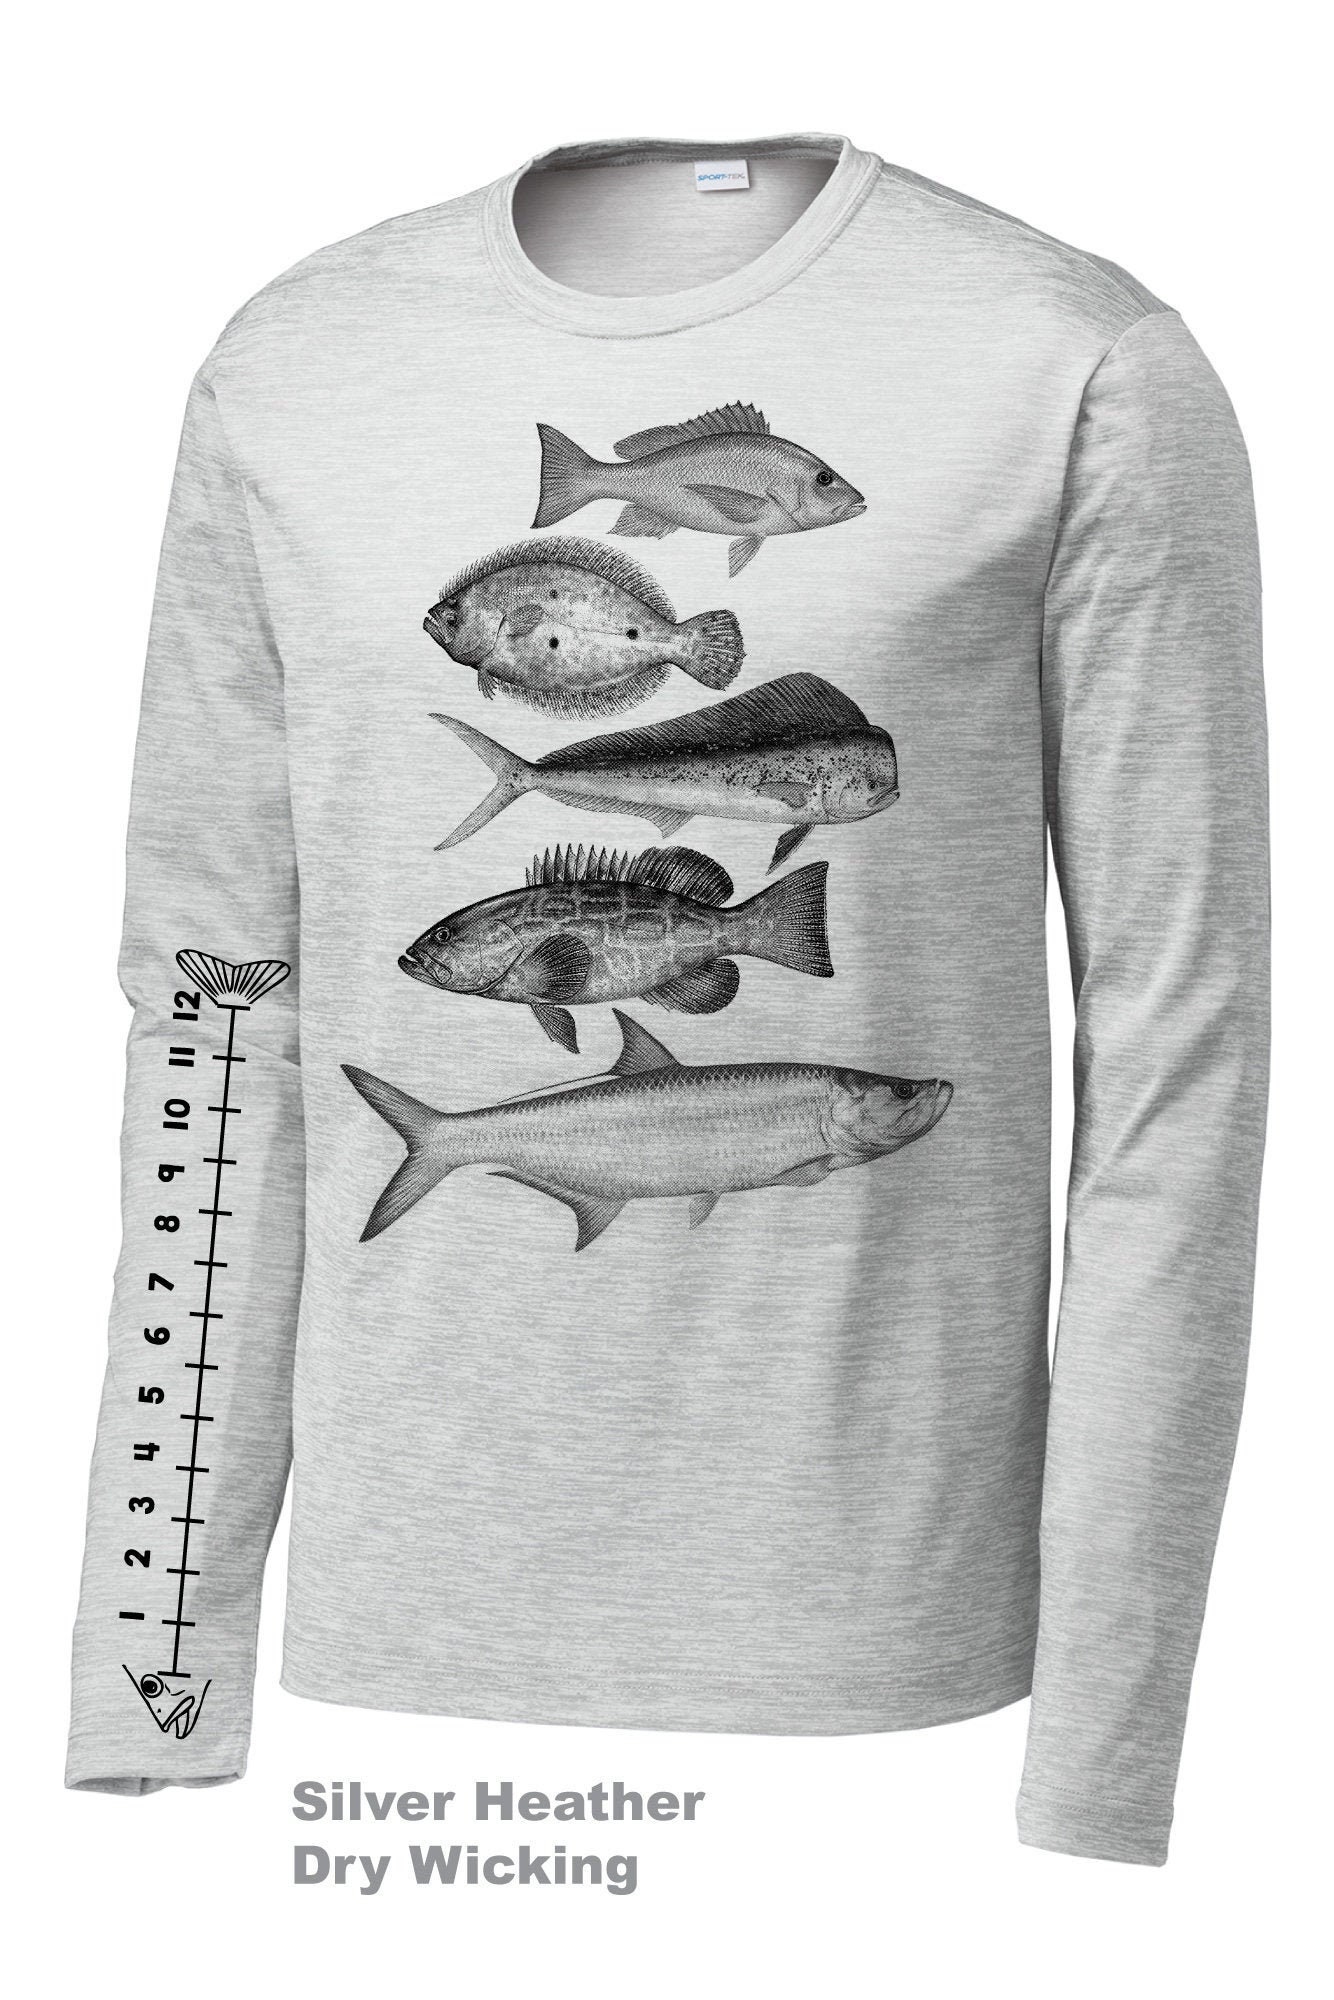 Ocean Fishing Shirts 